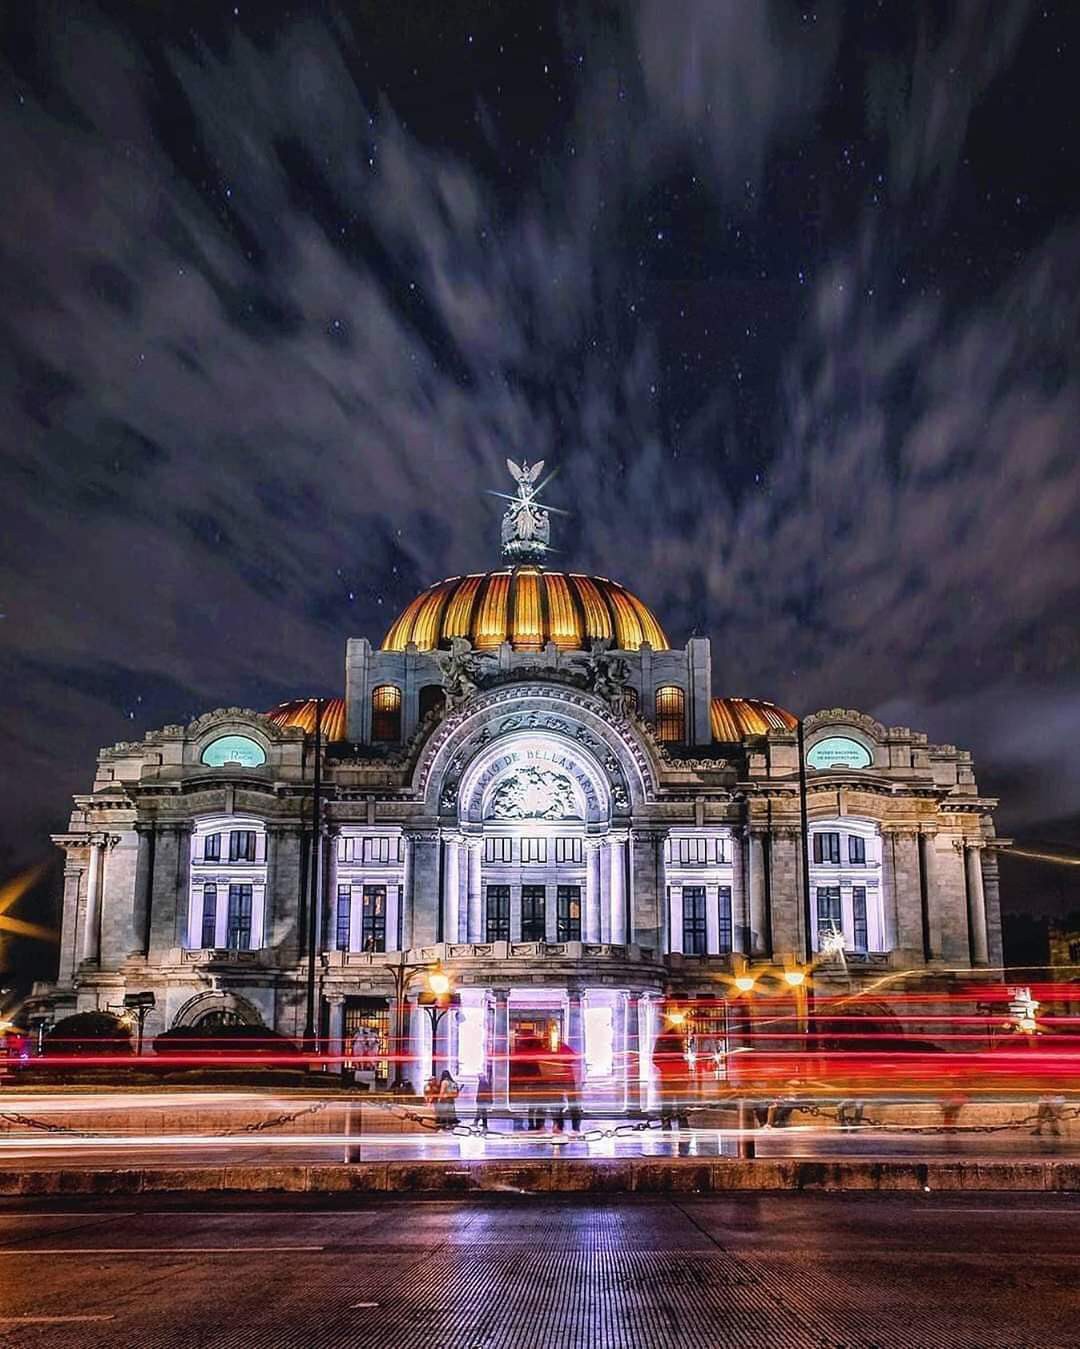 Bellas artes. Дворец изящных искусств Мексика. Дворец изящных искусств Мехико внутри. Дворец изящных искусств в Мехико, Мексика концертный зал. Национальный дворец Мехико внутри.